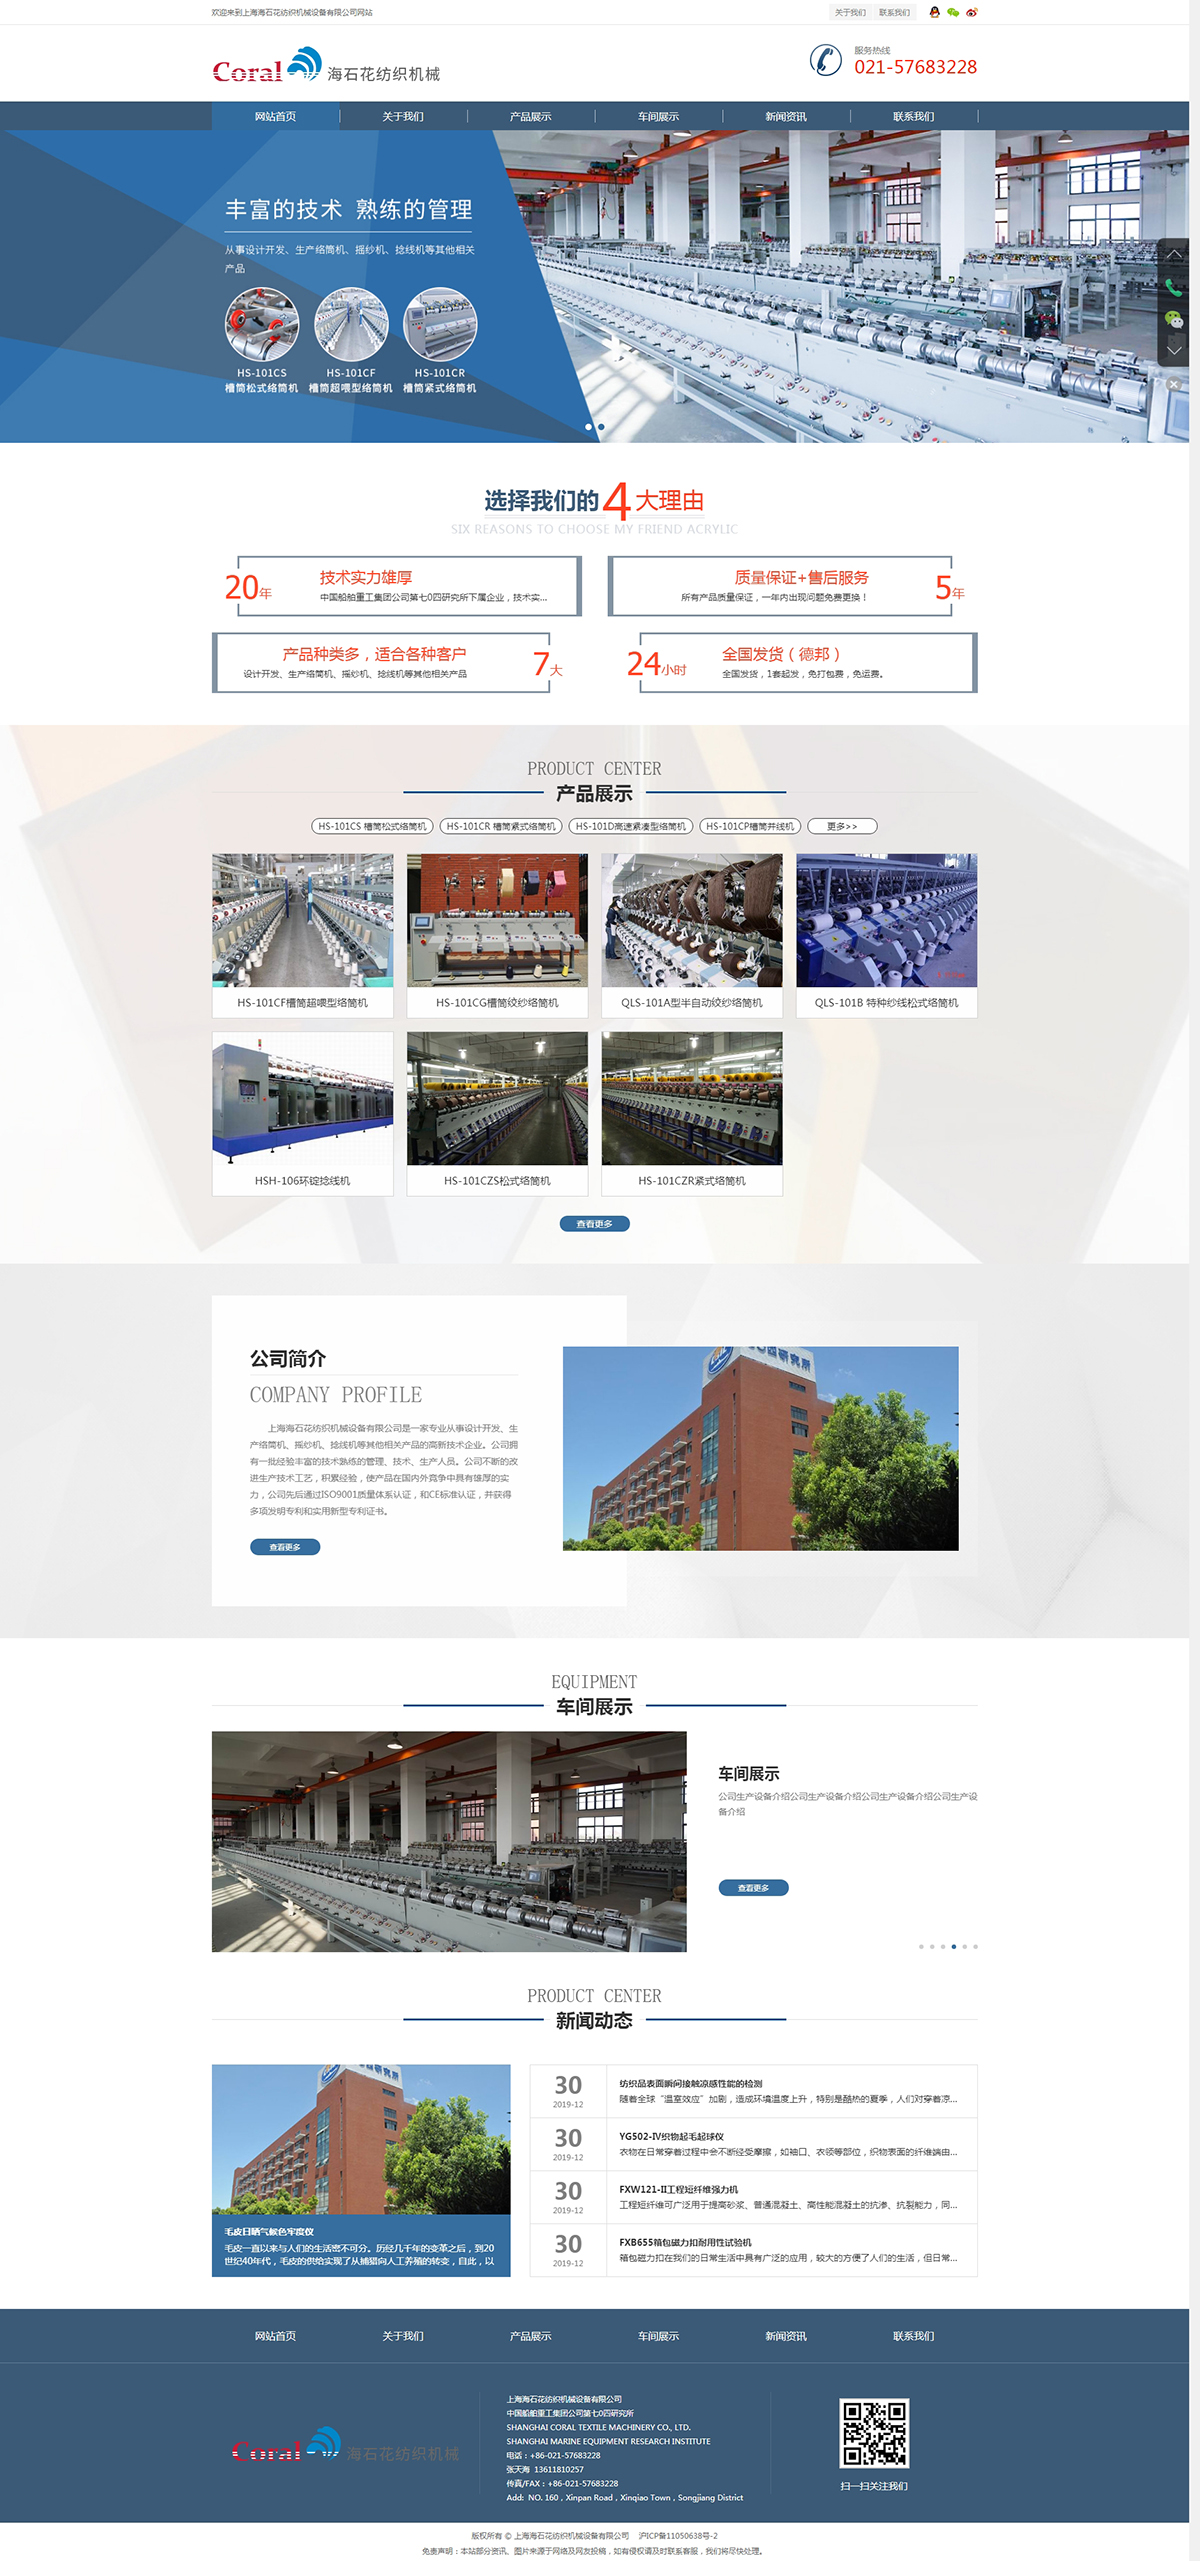 上海海石花纺织机械设备有限公司网站